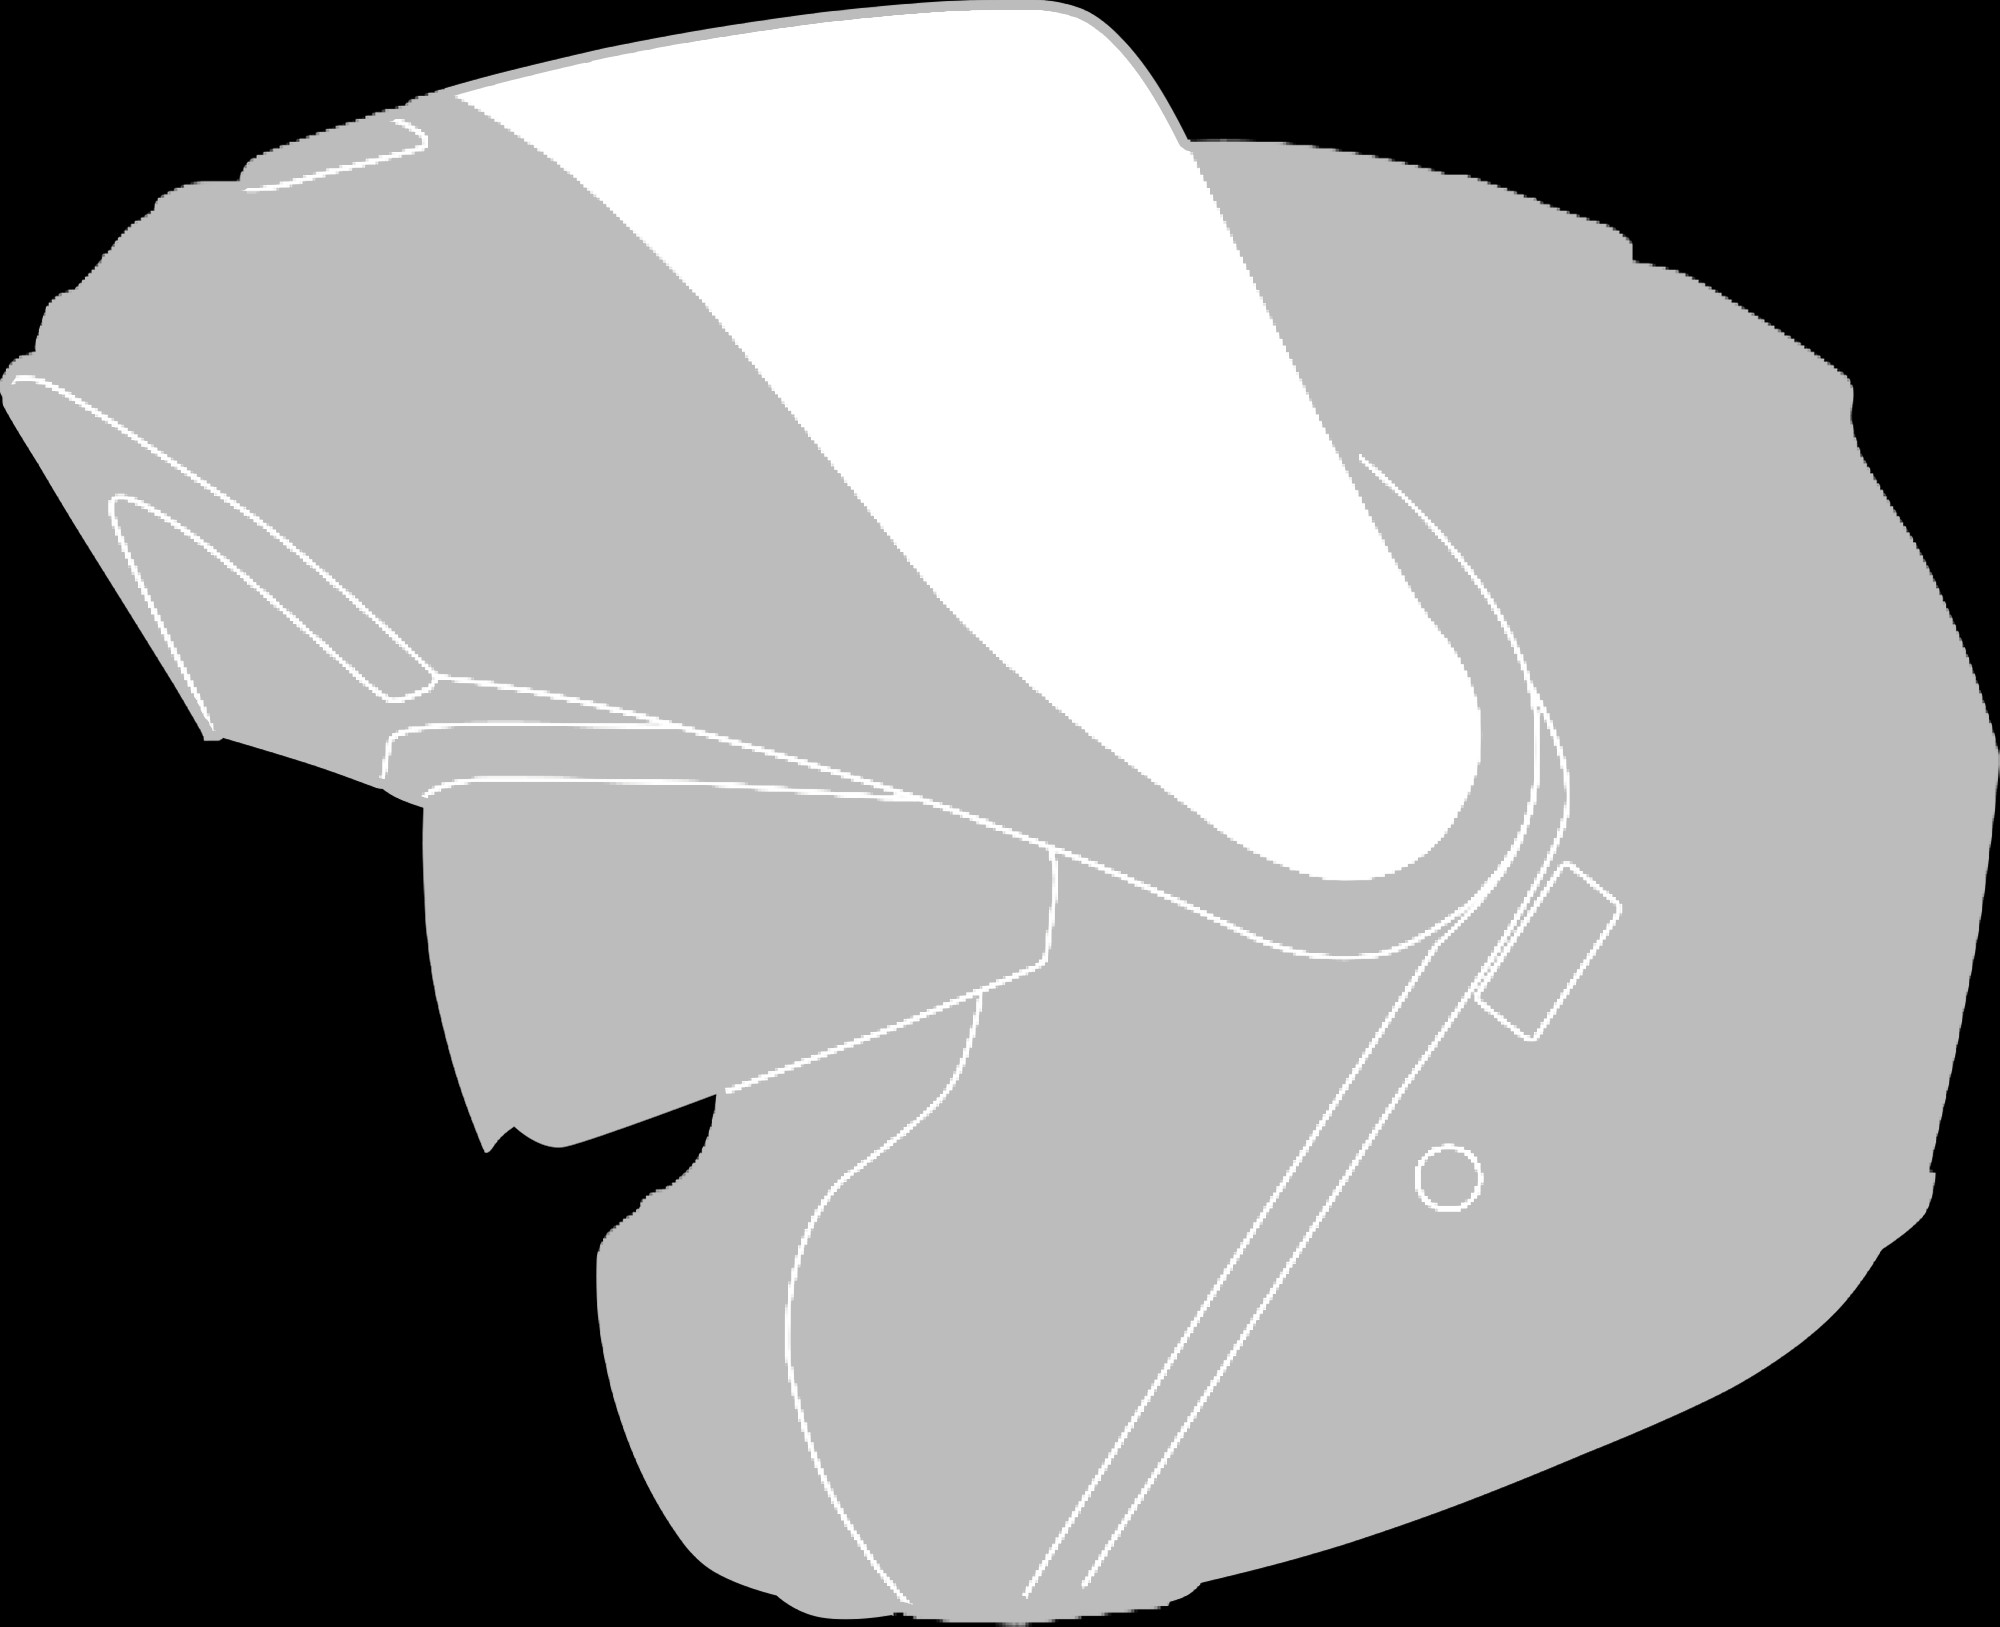 Fip-up helmet